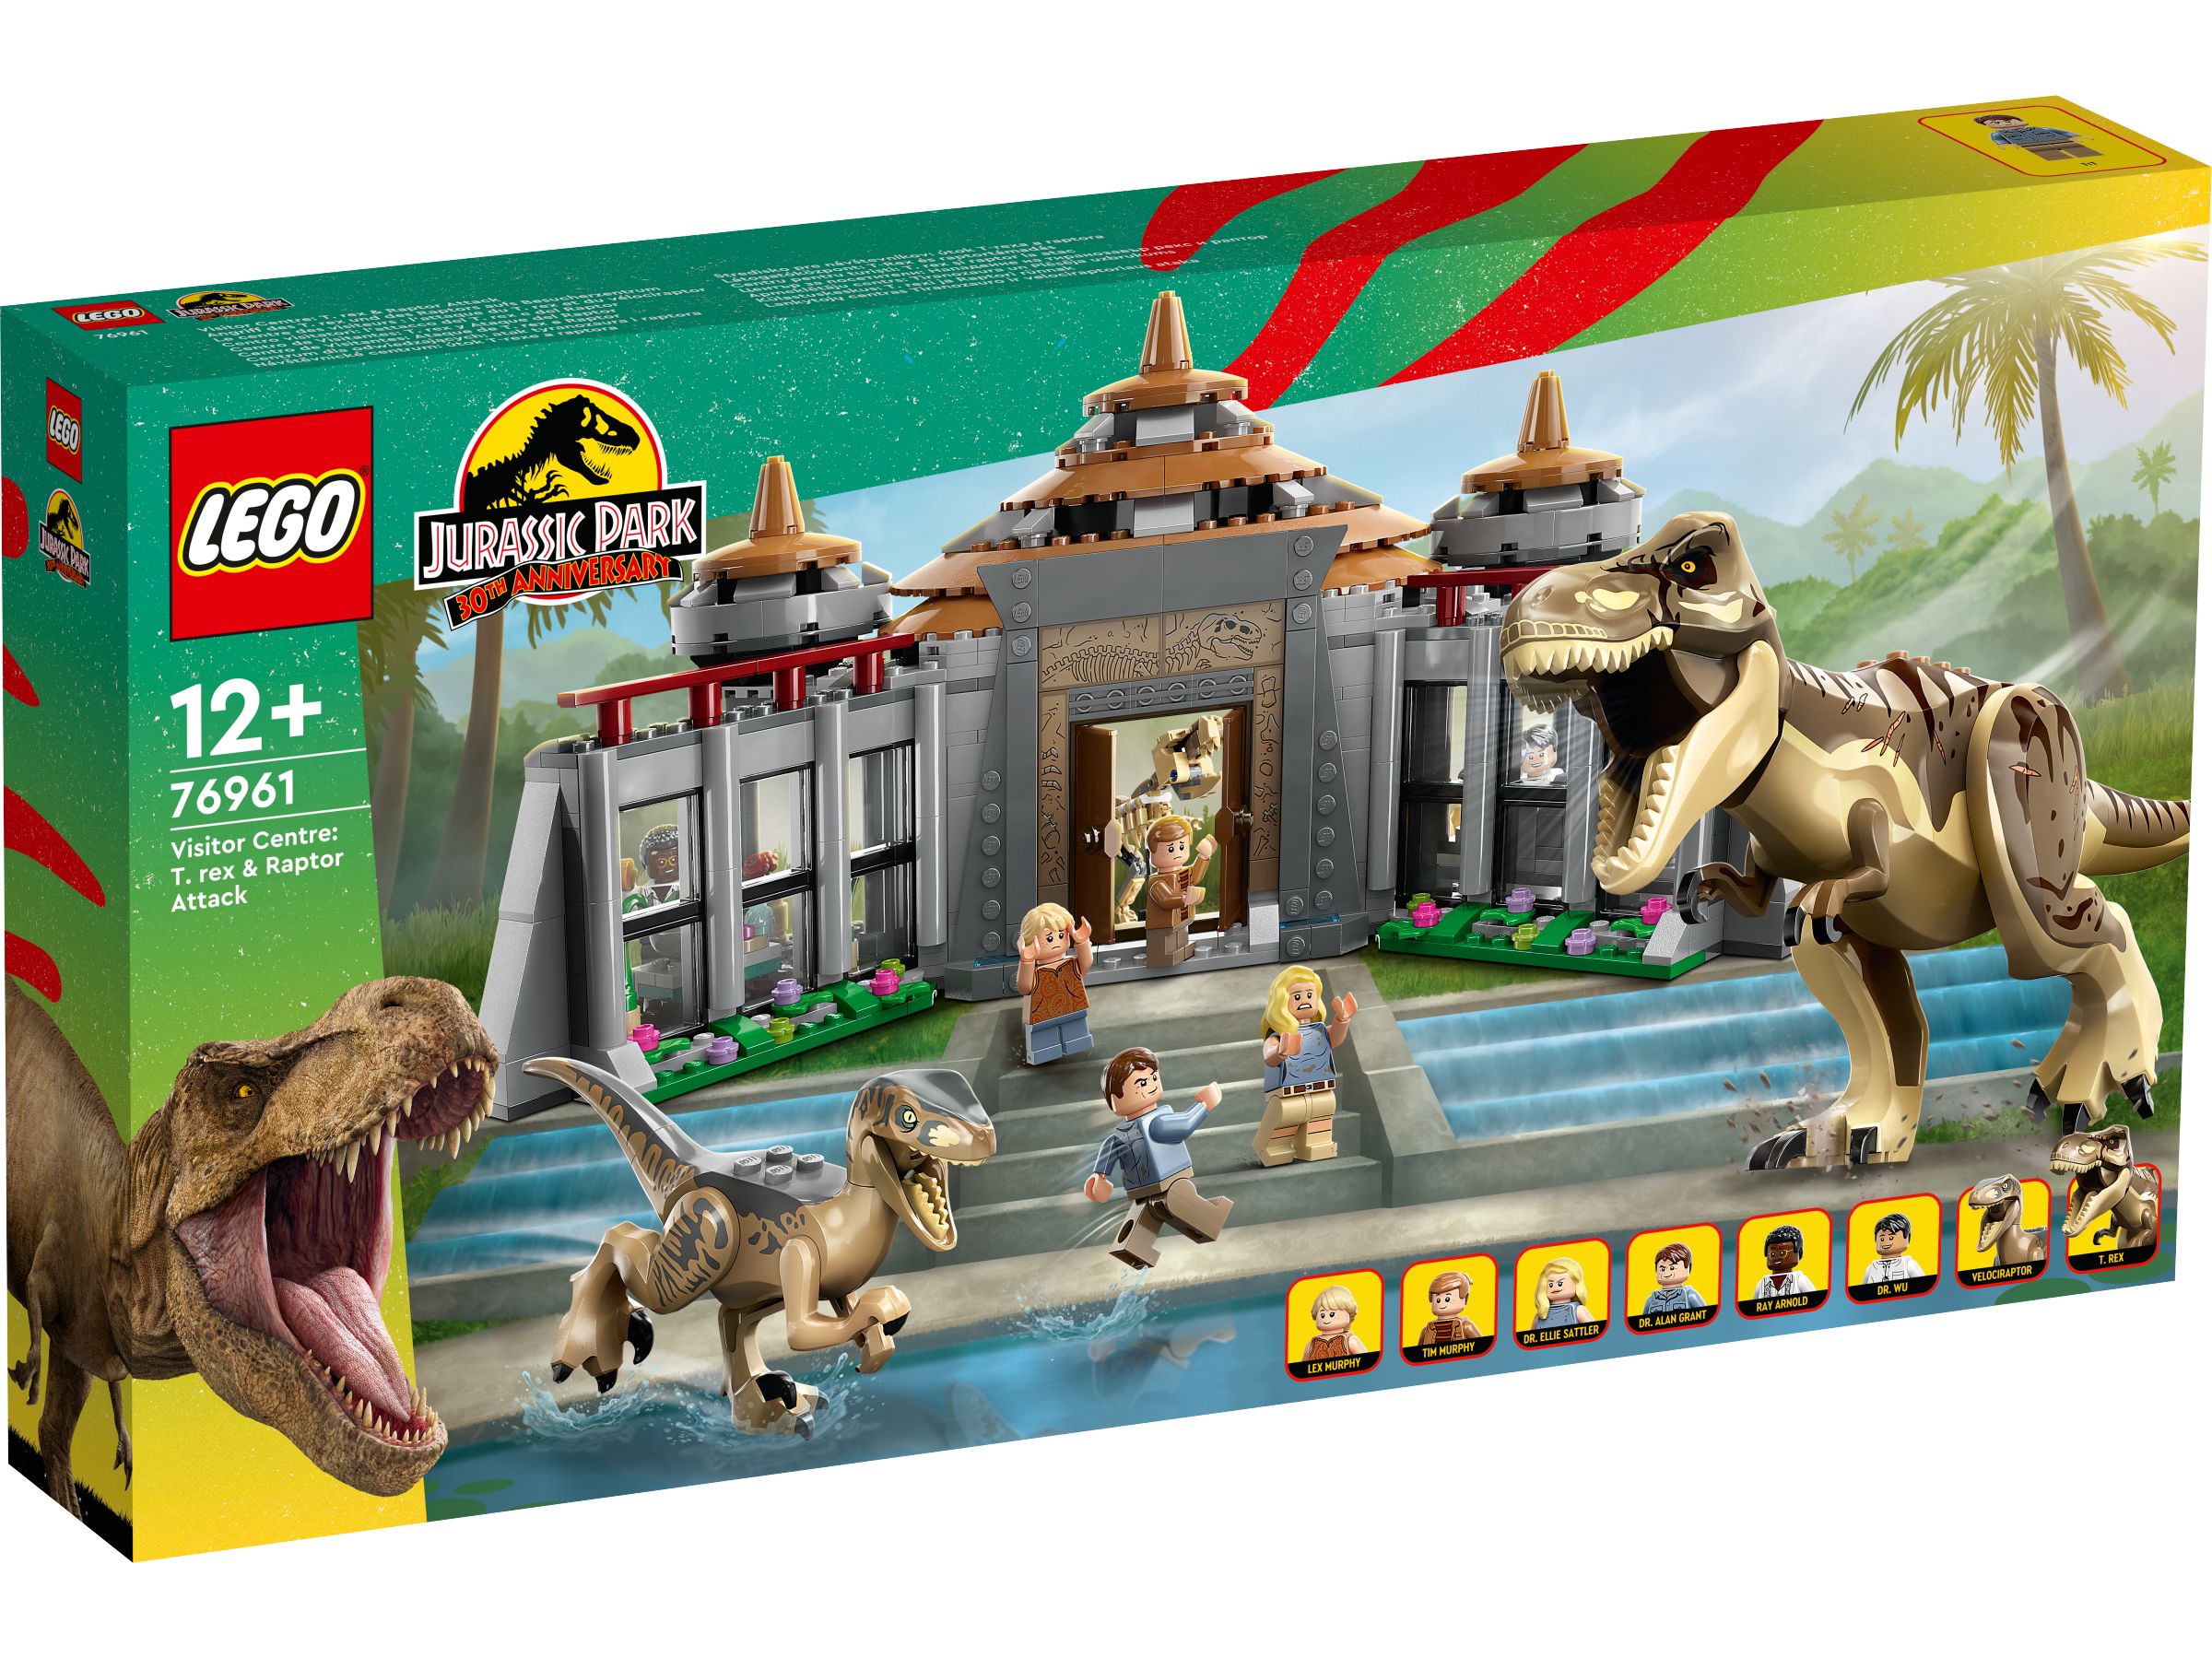 LEGO Jurassic World 76961 Angriff des T. rex und des Raptors aufs Besucherzentrum LEGO_76961_Box1_v29.jpg